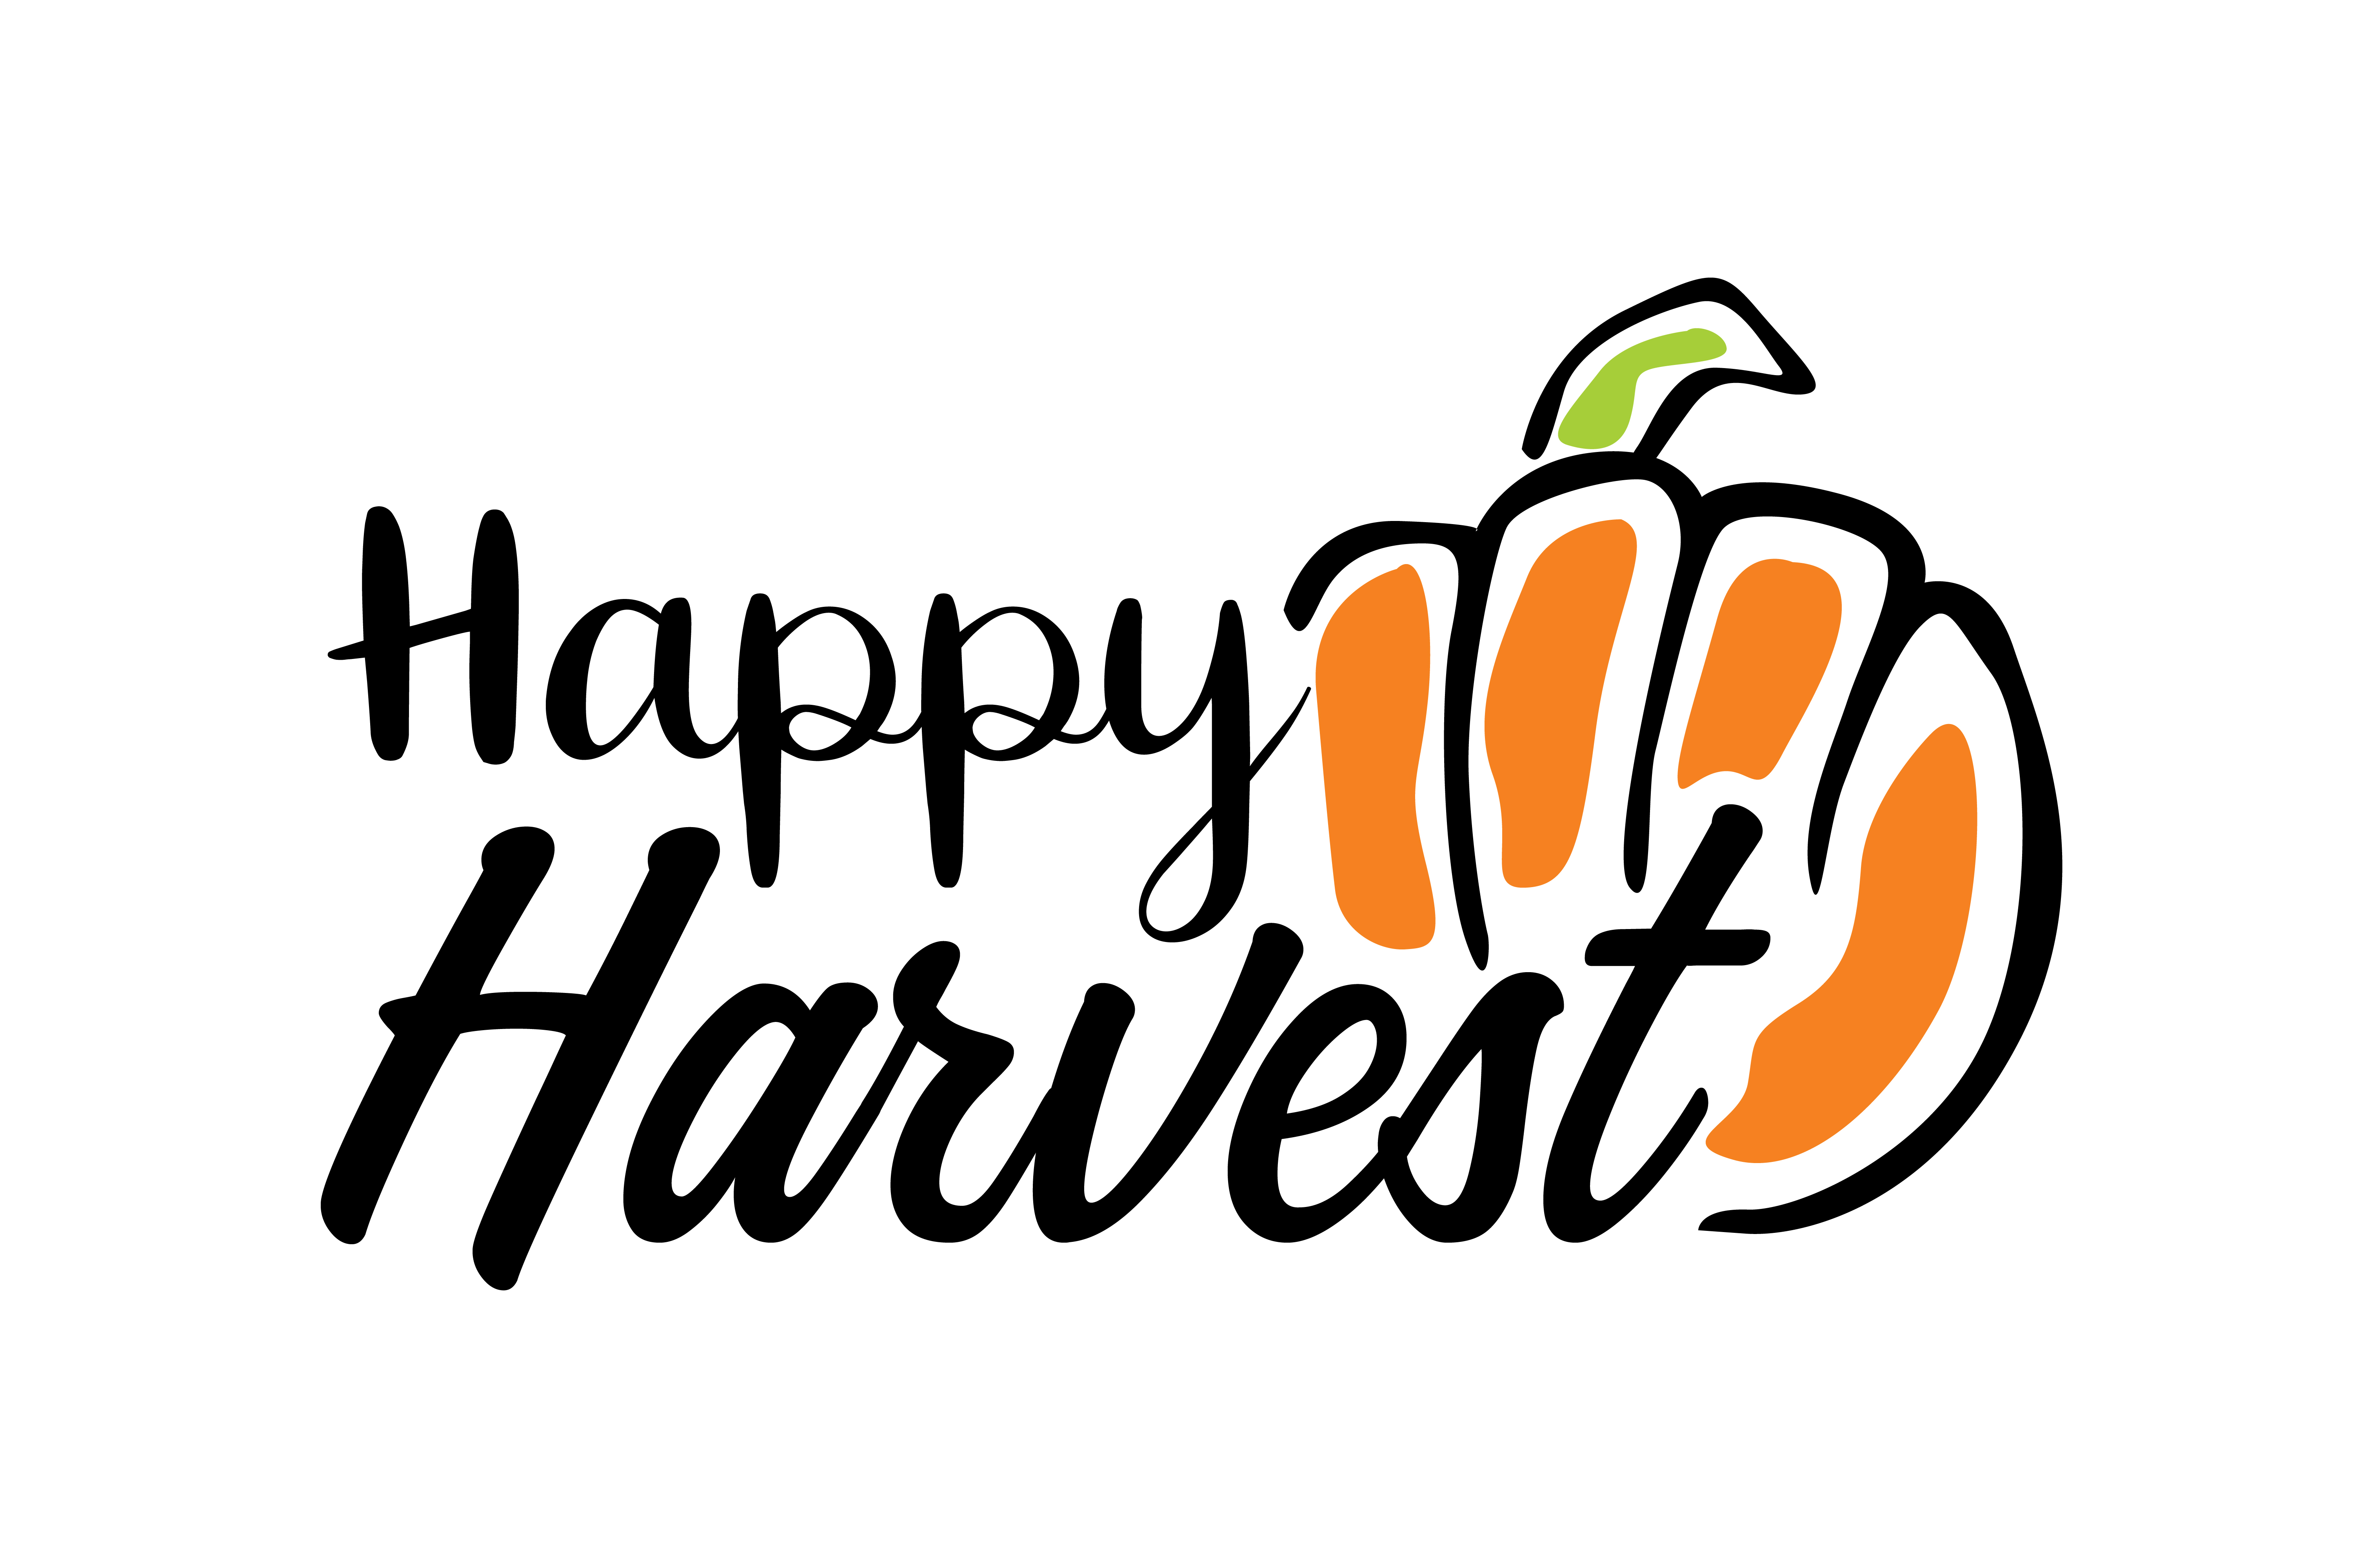 Happy harvest.